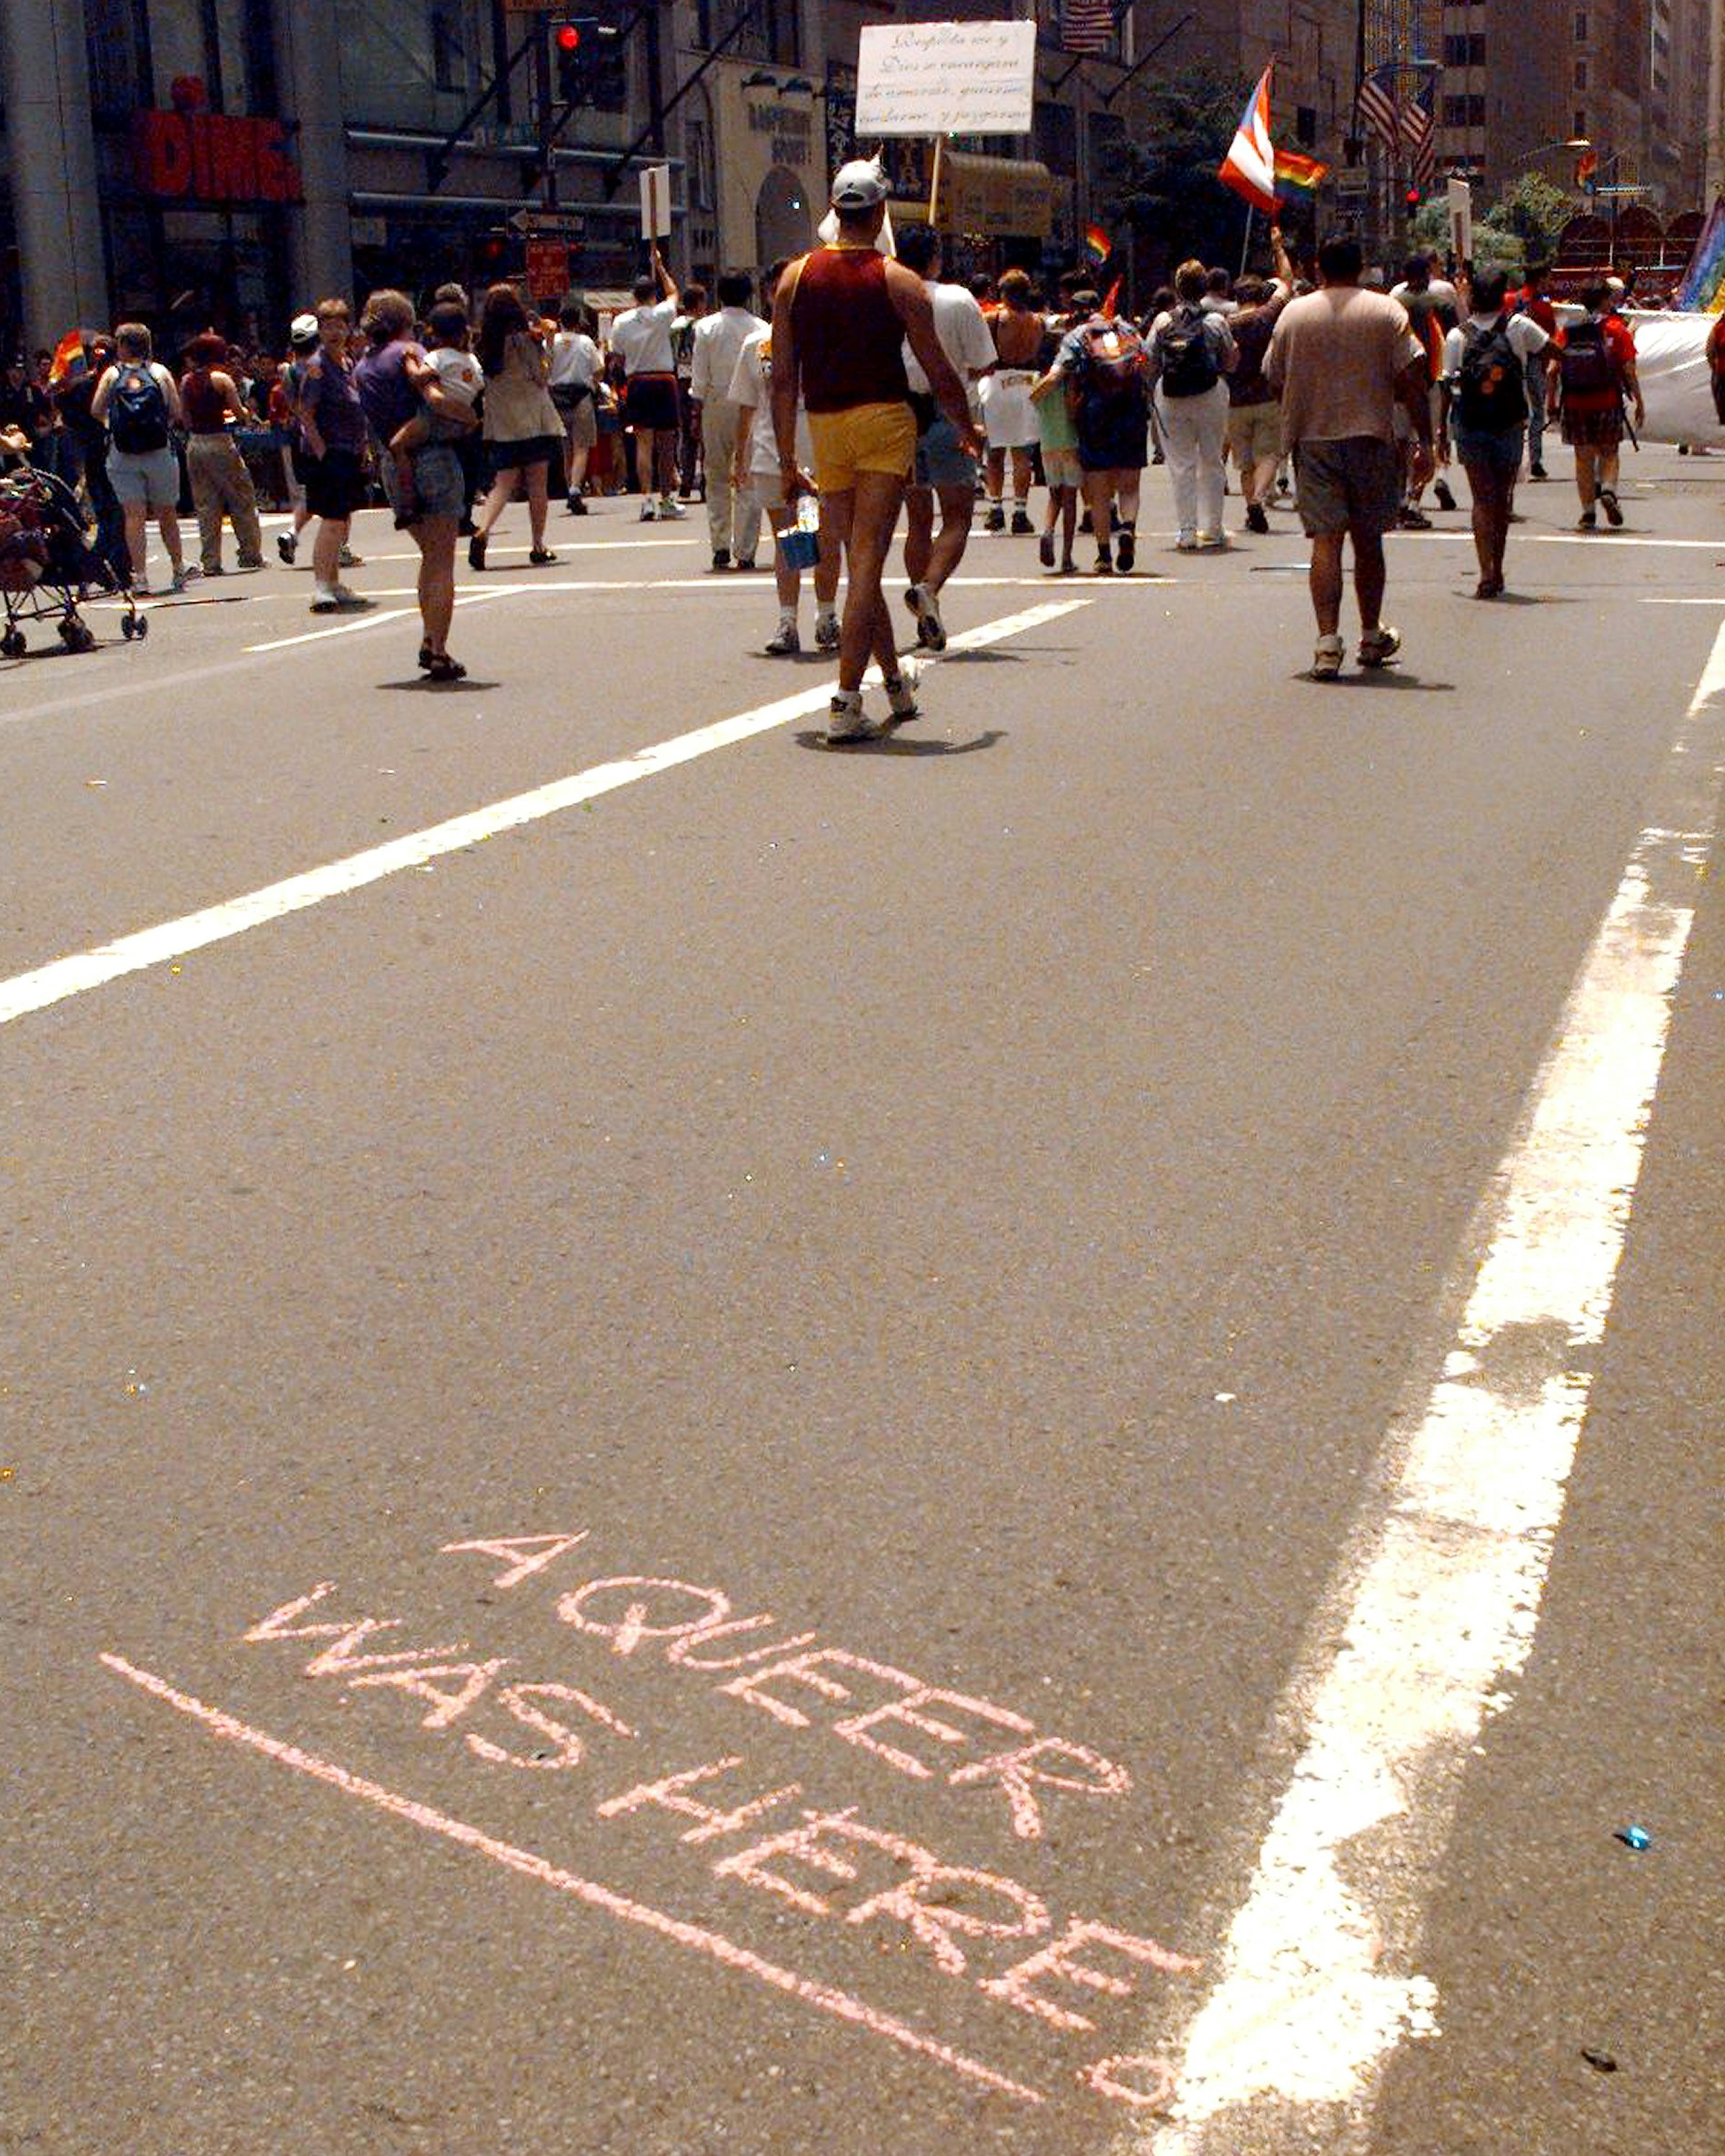 nyc gay pride parade 1989 photos